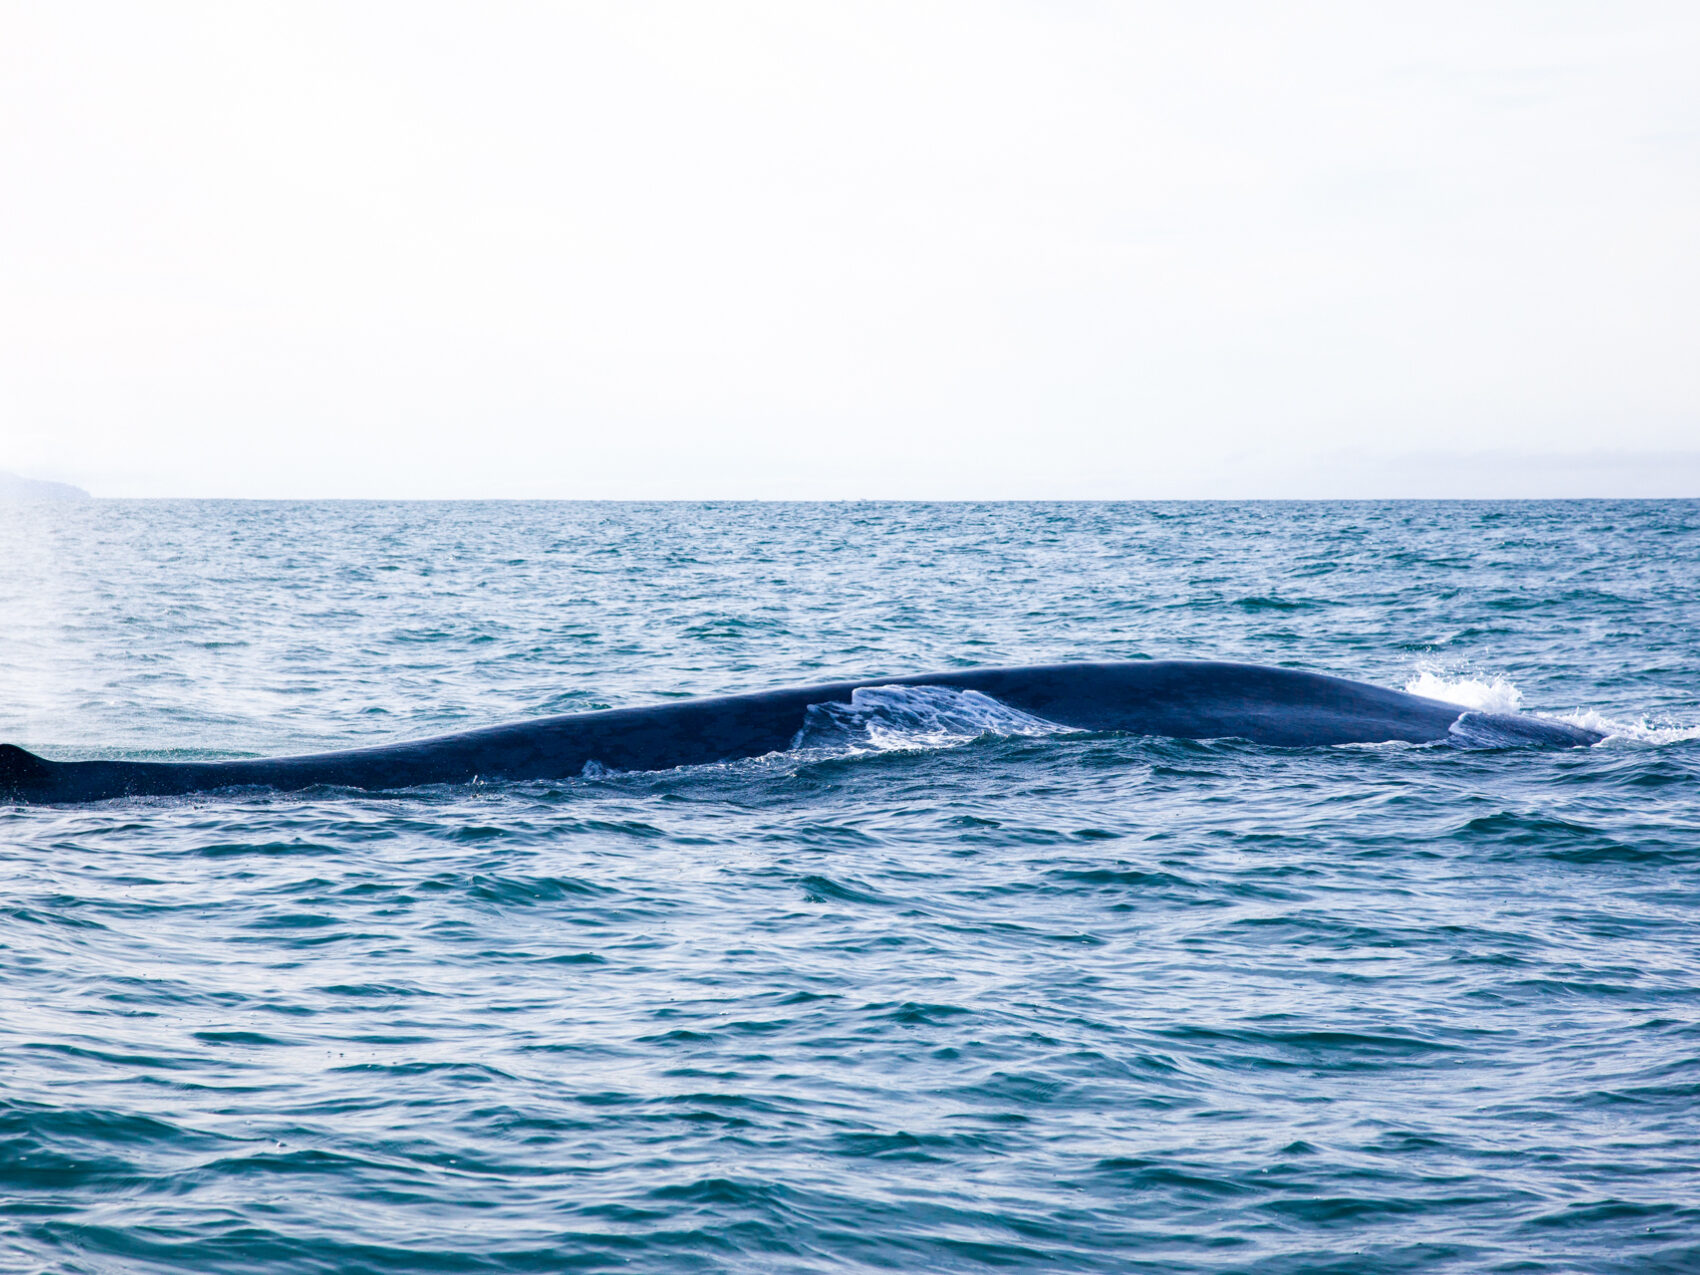 Walbeobachtung Whalewatching Islandreisen Katla Travel Ausflüge Per Boot
Walbuckel im Wasser